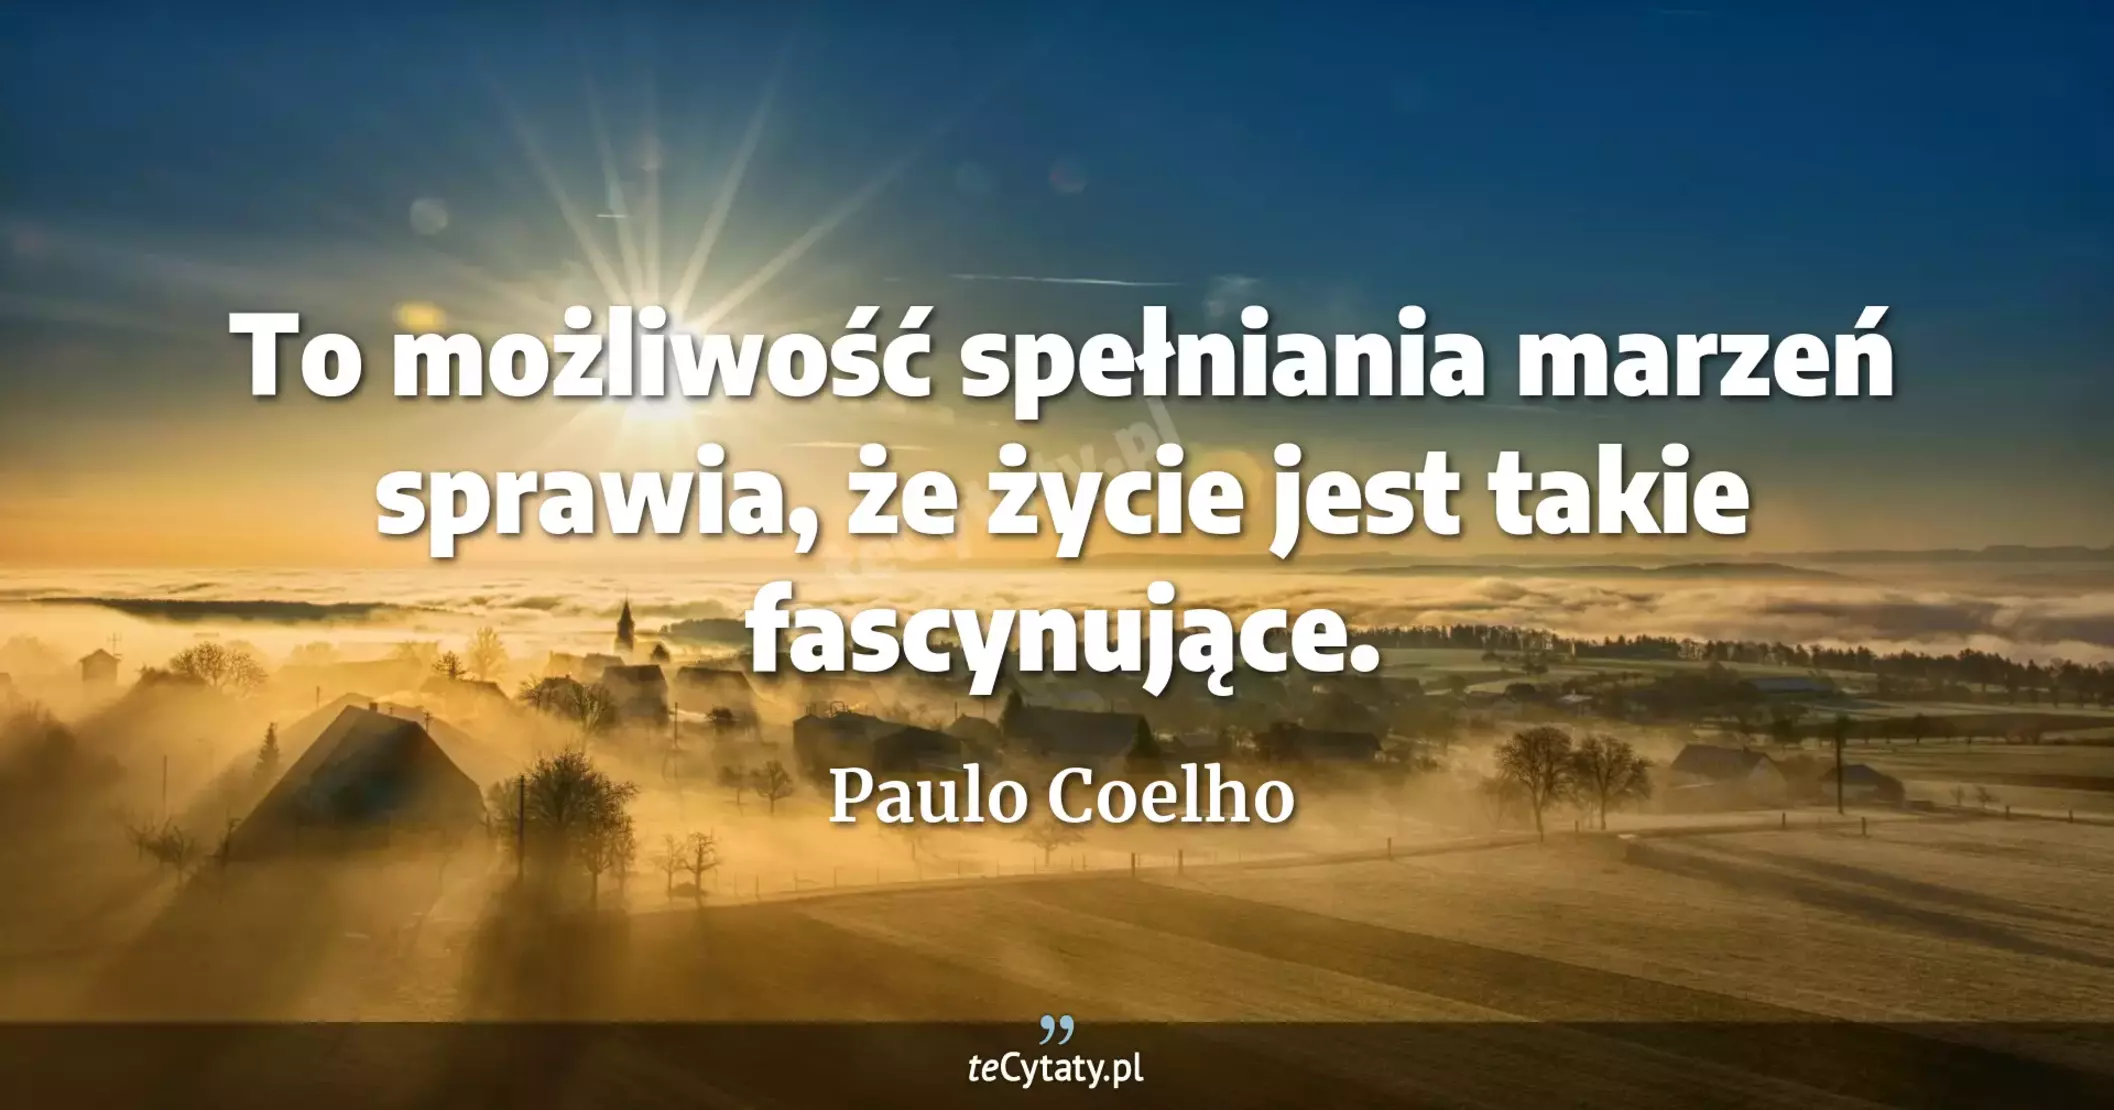 To możliwość spełniania marzeń sprawia, że życie jest takie fascynujące. - Paulo Coelho